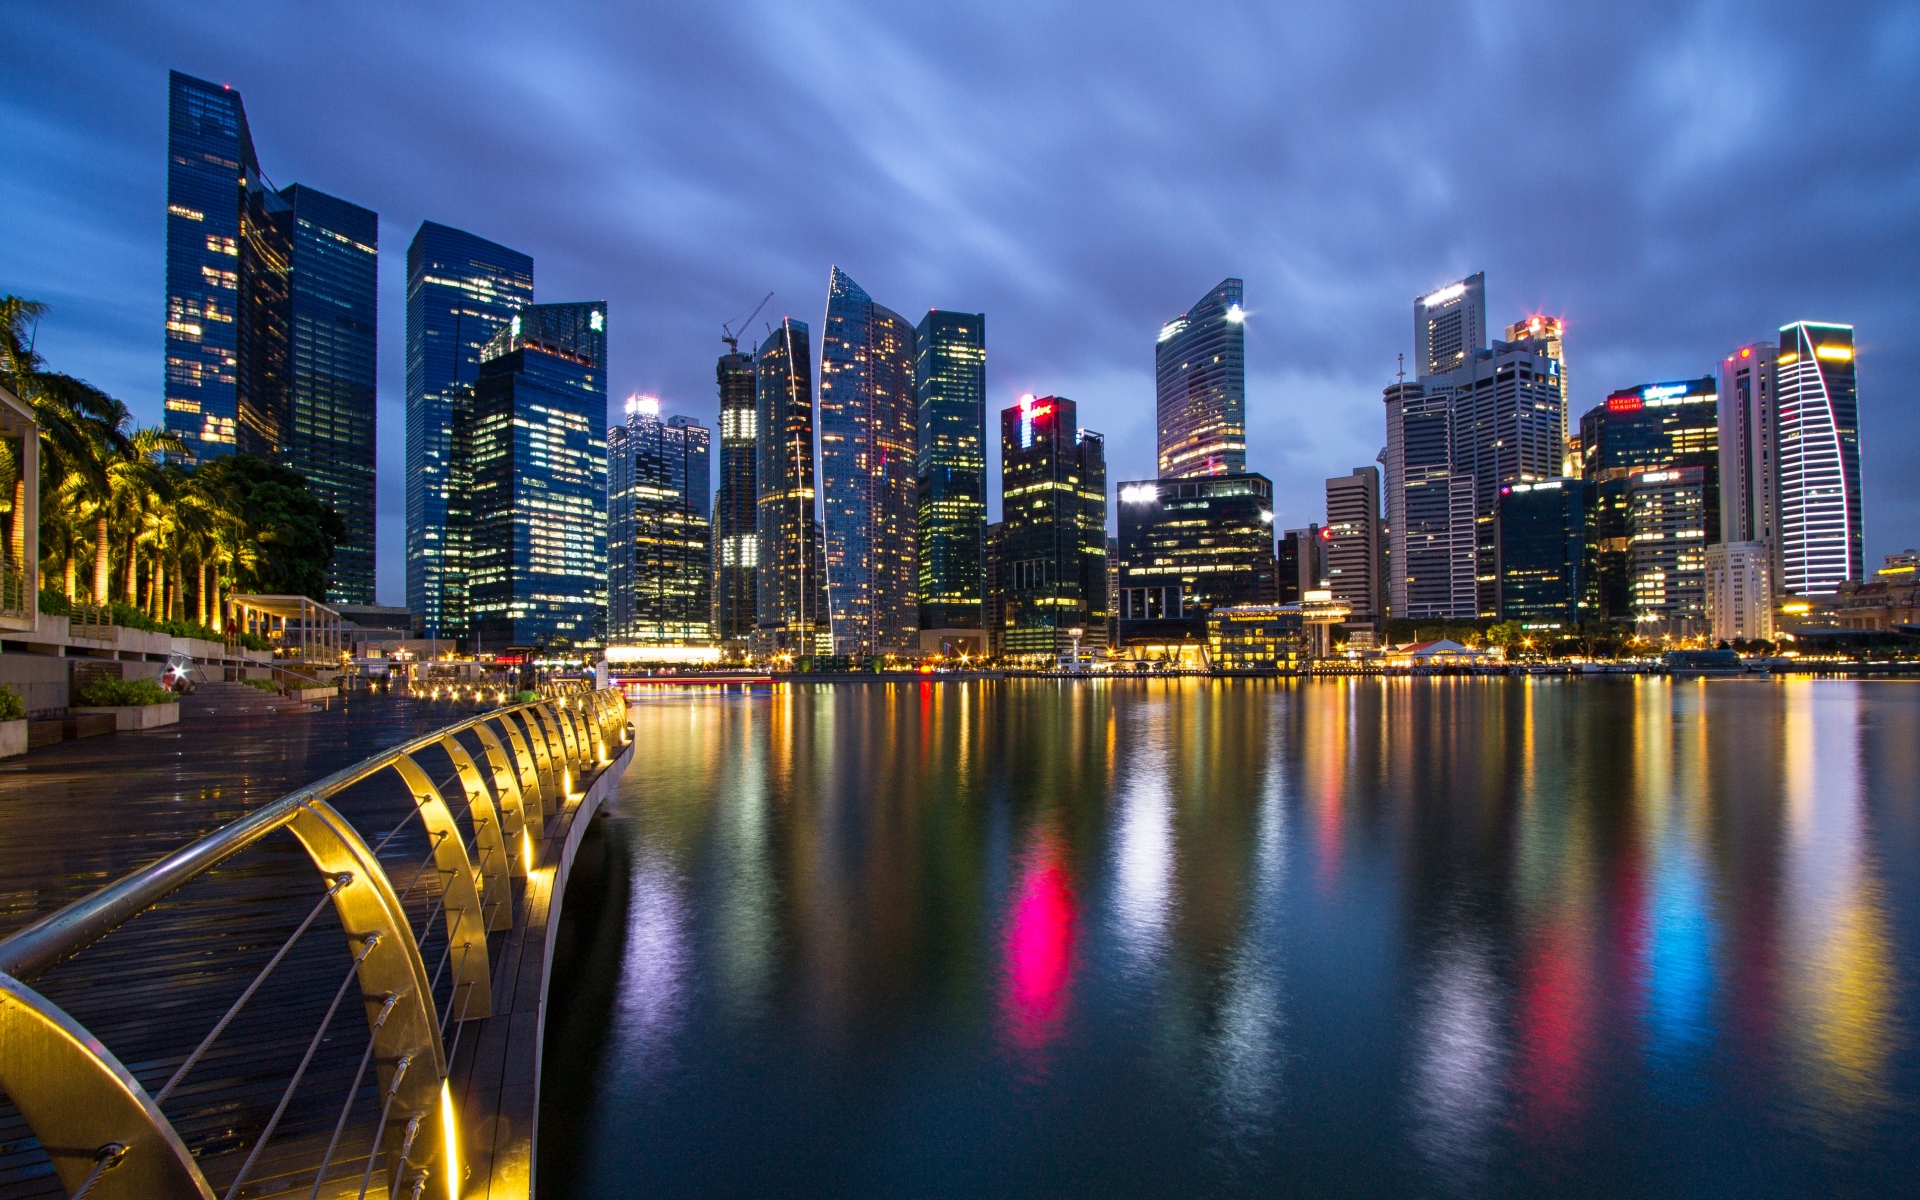 Картинки Малайзия, сингапур, город-государство, мегаполис, небоскребы, ночь, свет, голубой, небо, мост, набережная, разлив фото и обои на рабочий стол